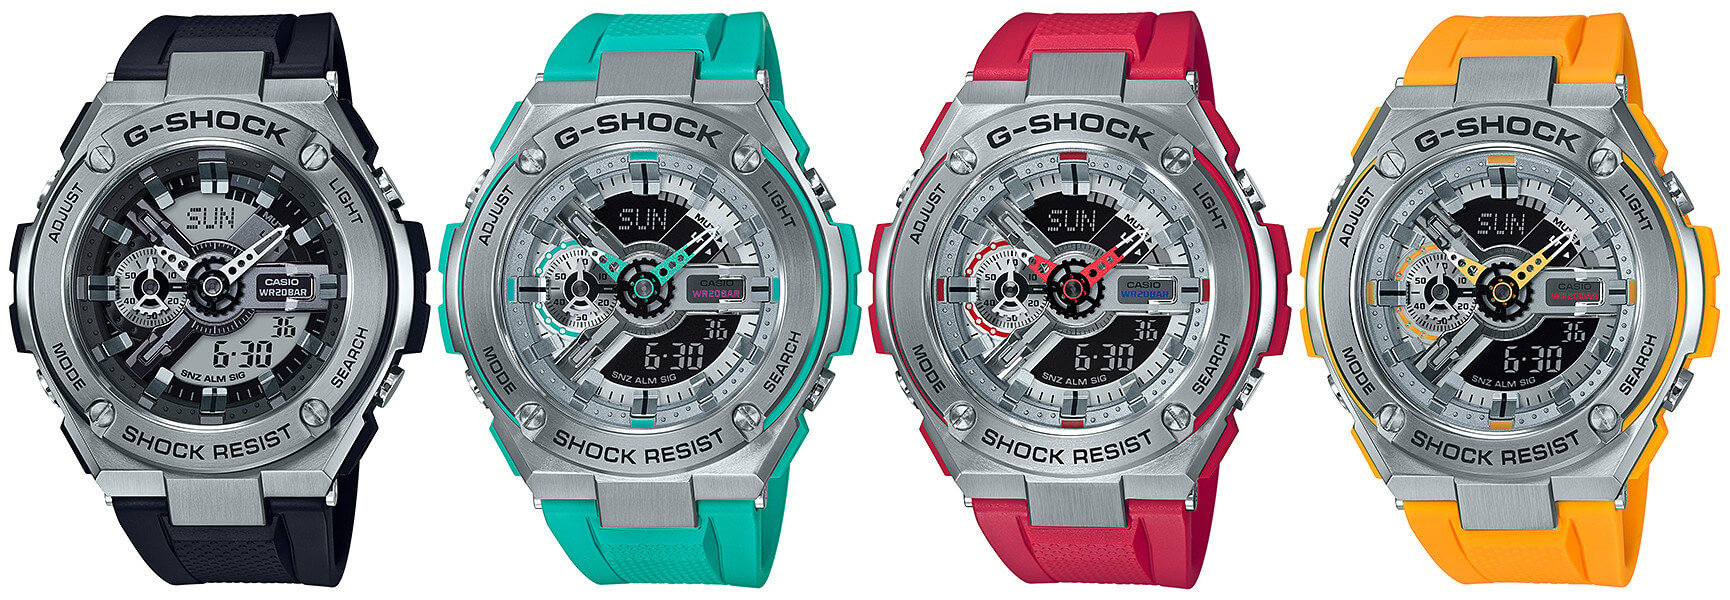 G-Shock G-STEEL GST-410 Series